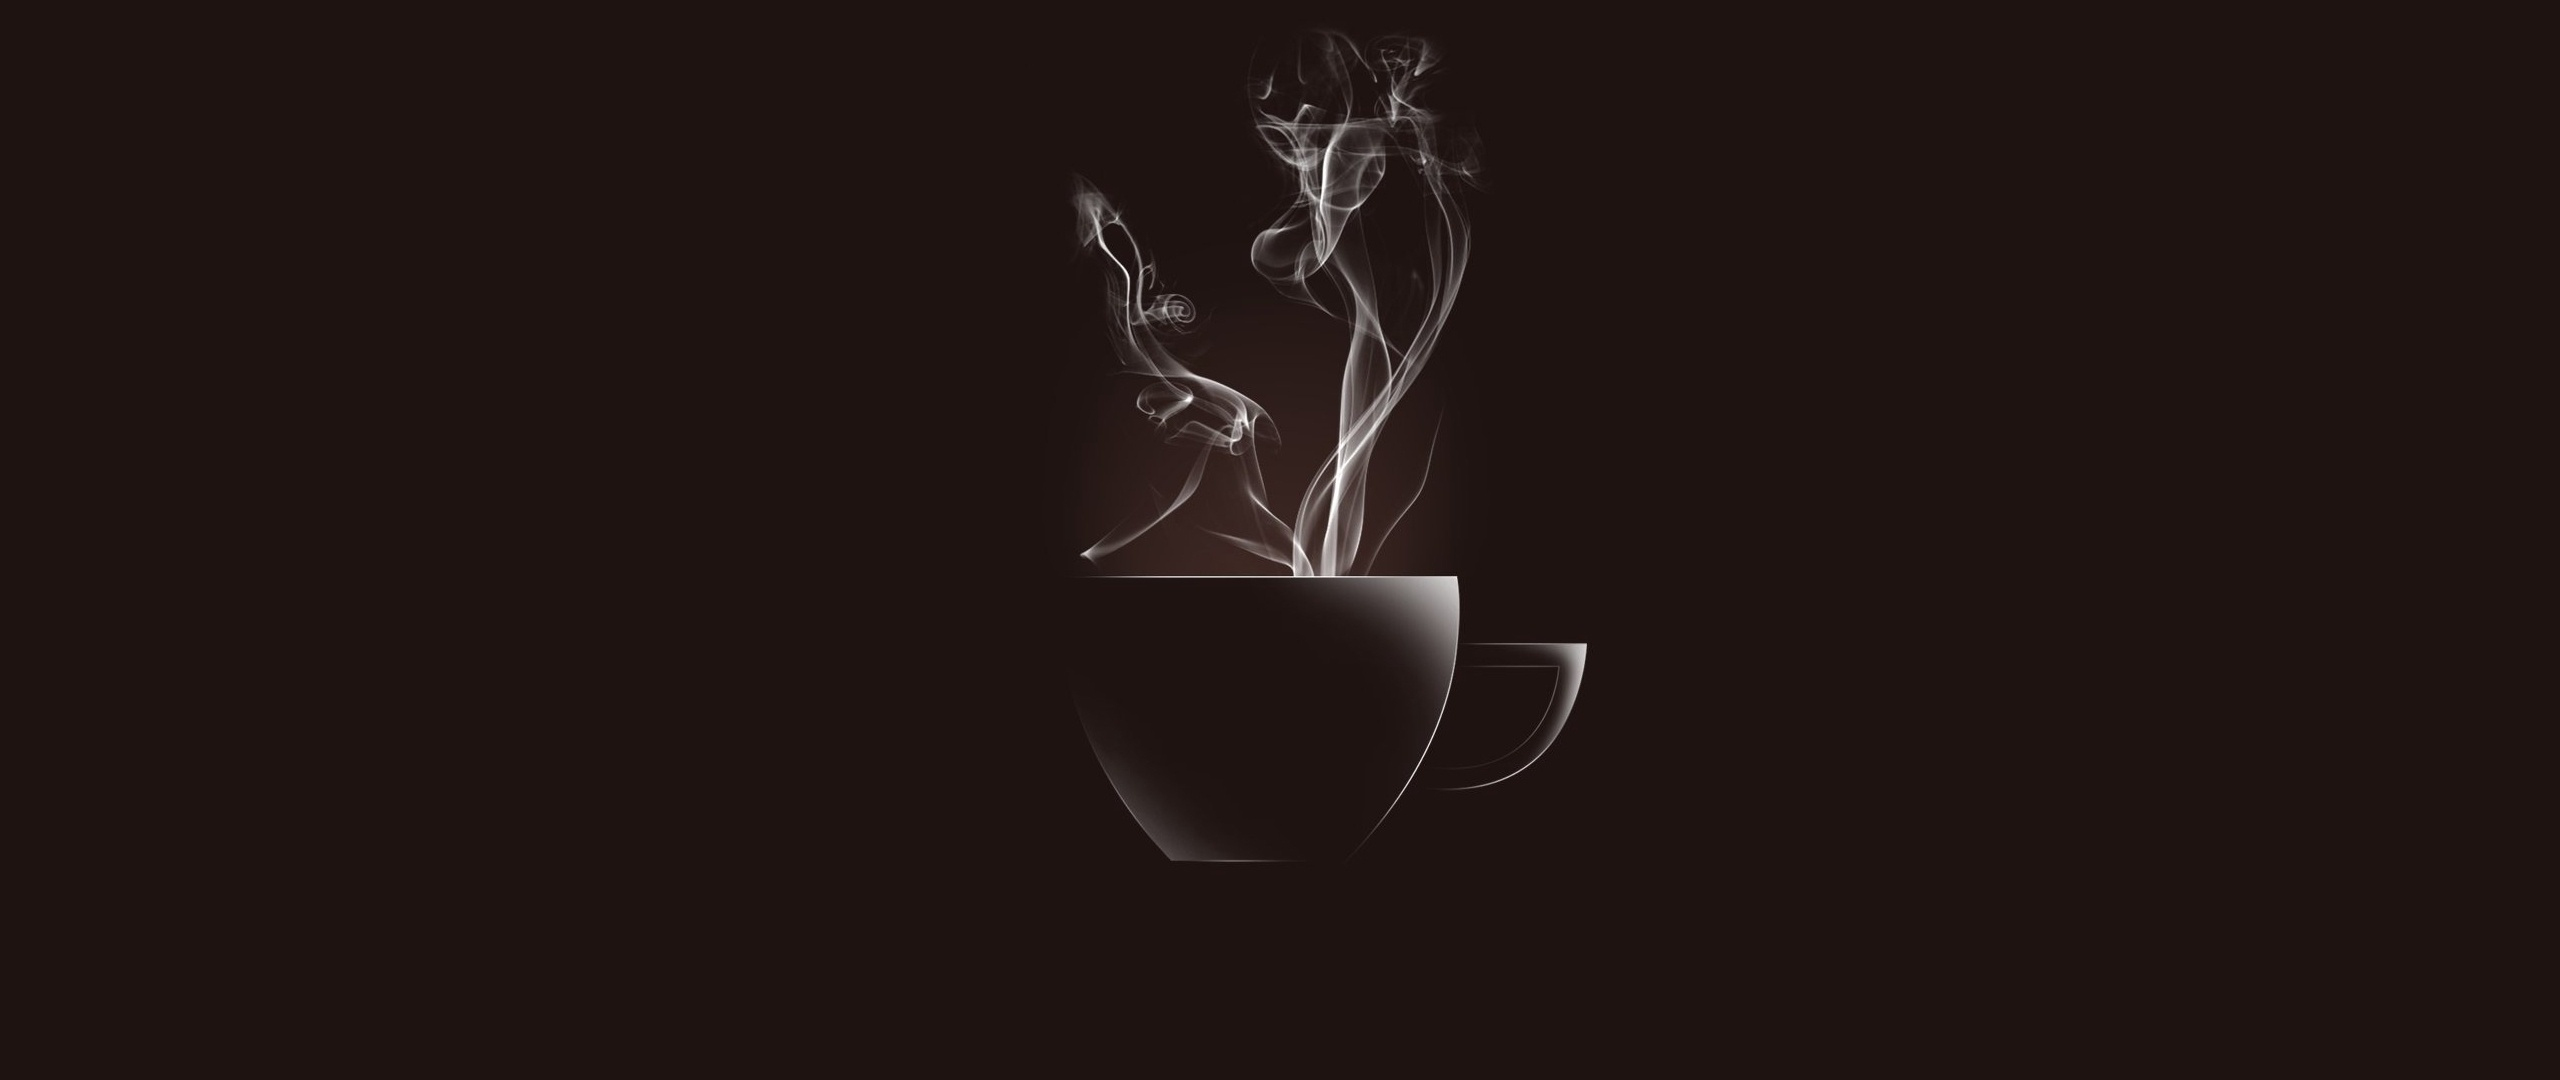 Кофе на темном фоне